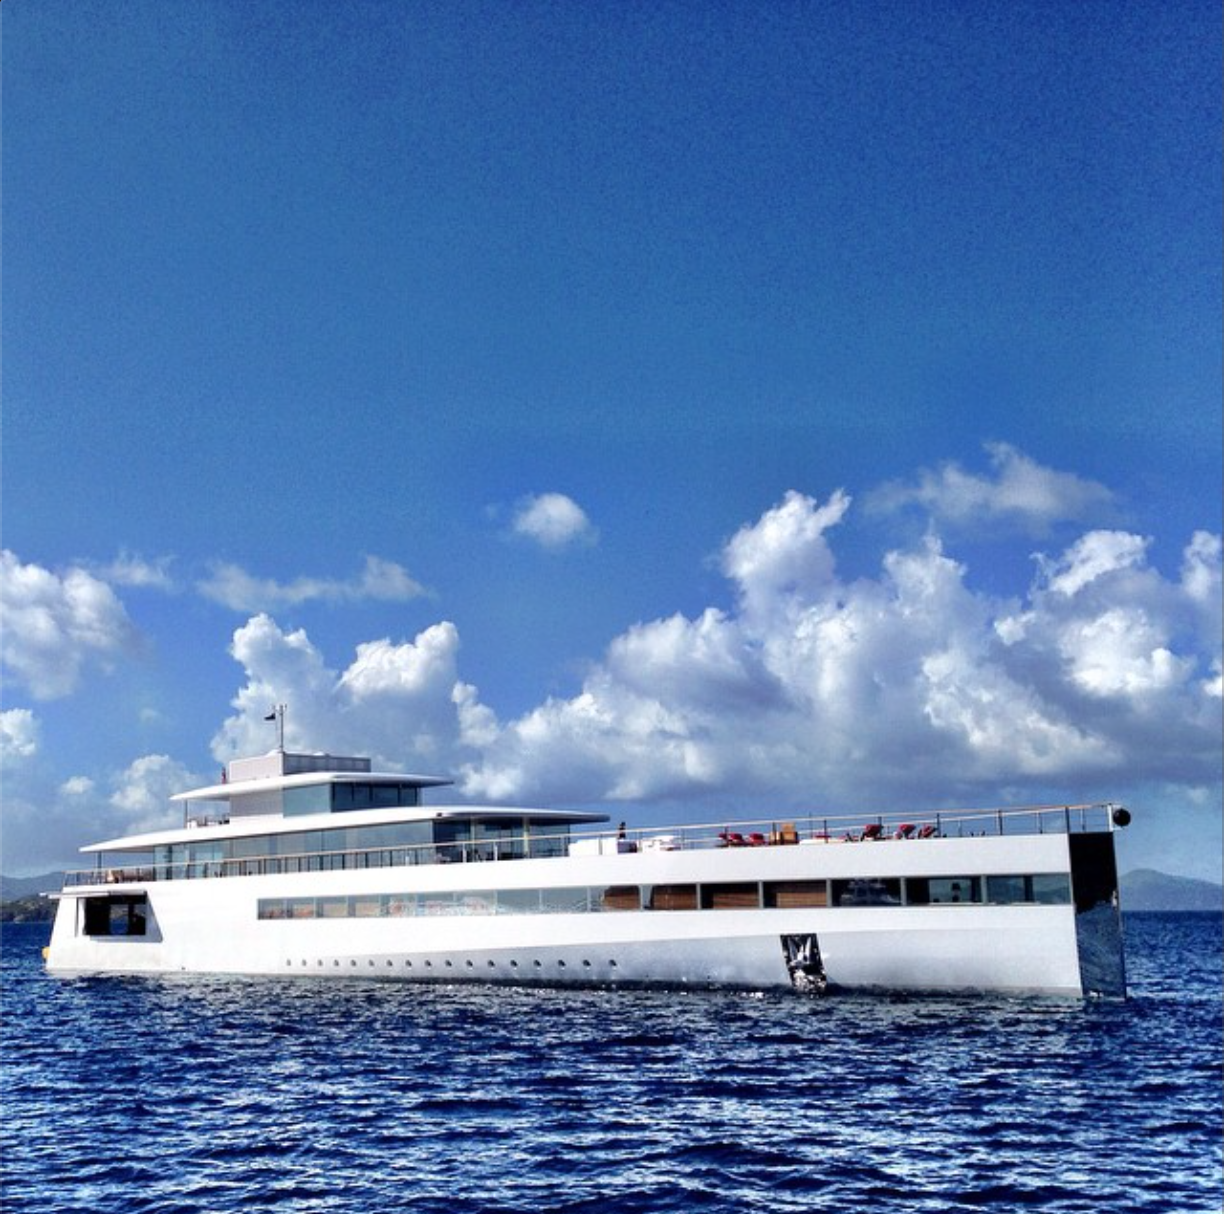 First Peek Into Steve Jobs’s Luxury Yacht Interior